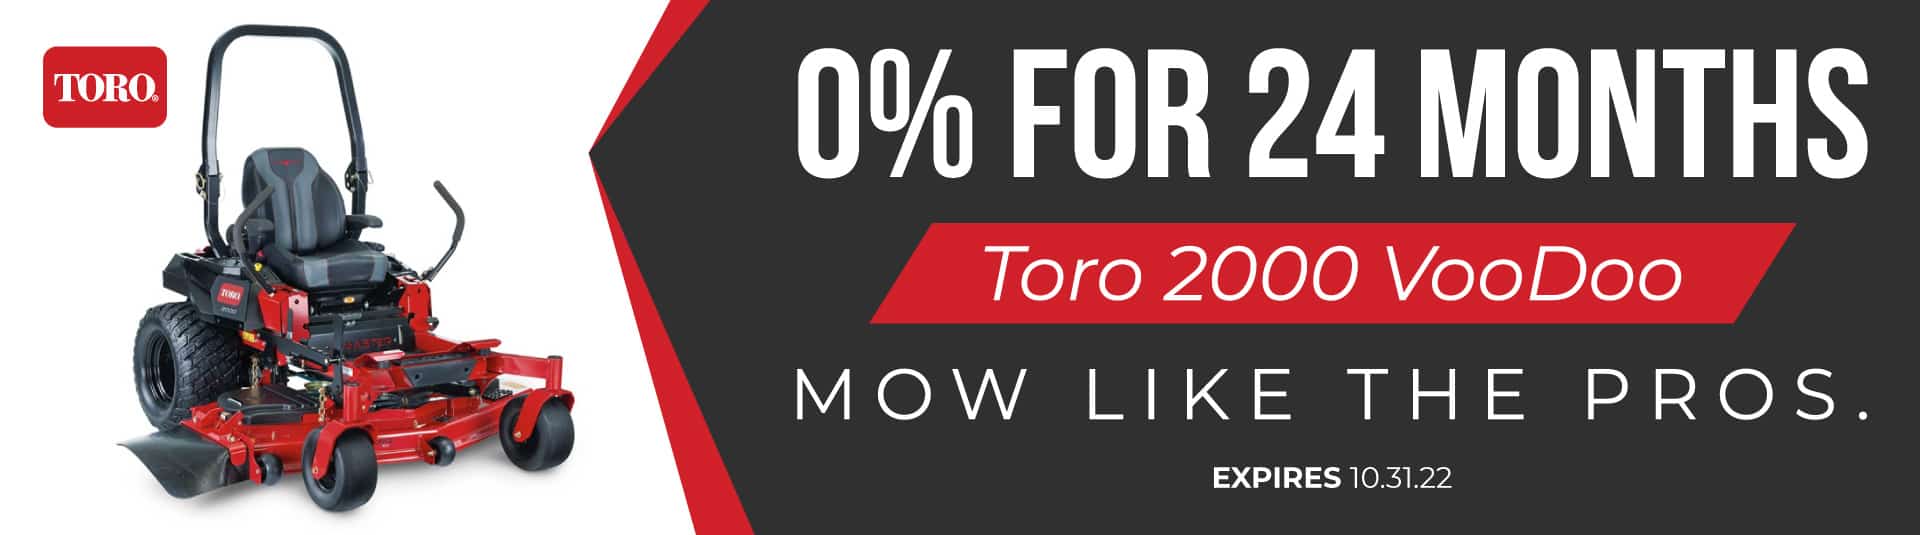 Toro 2000 VooDoo on sale